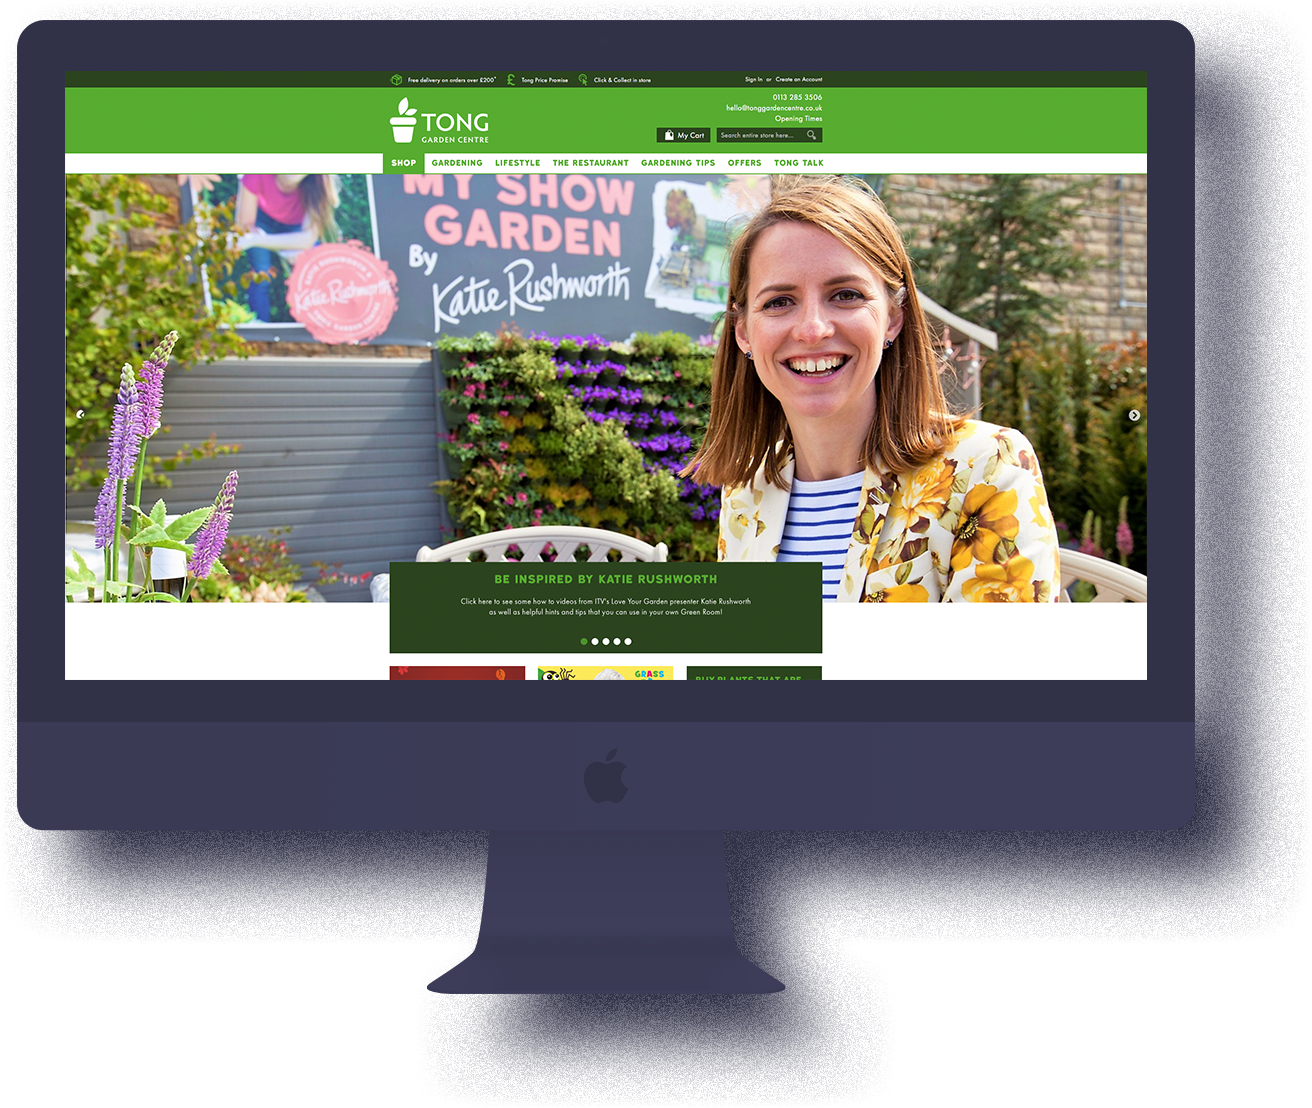 Tong Garden Centre website on an iPhone